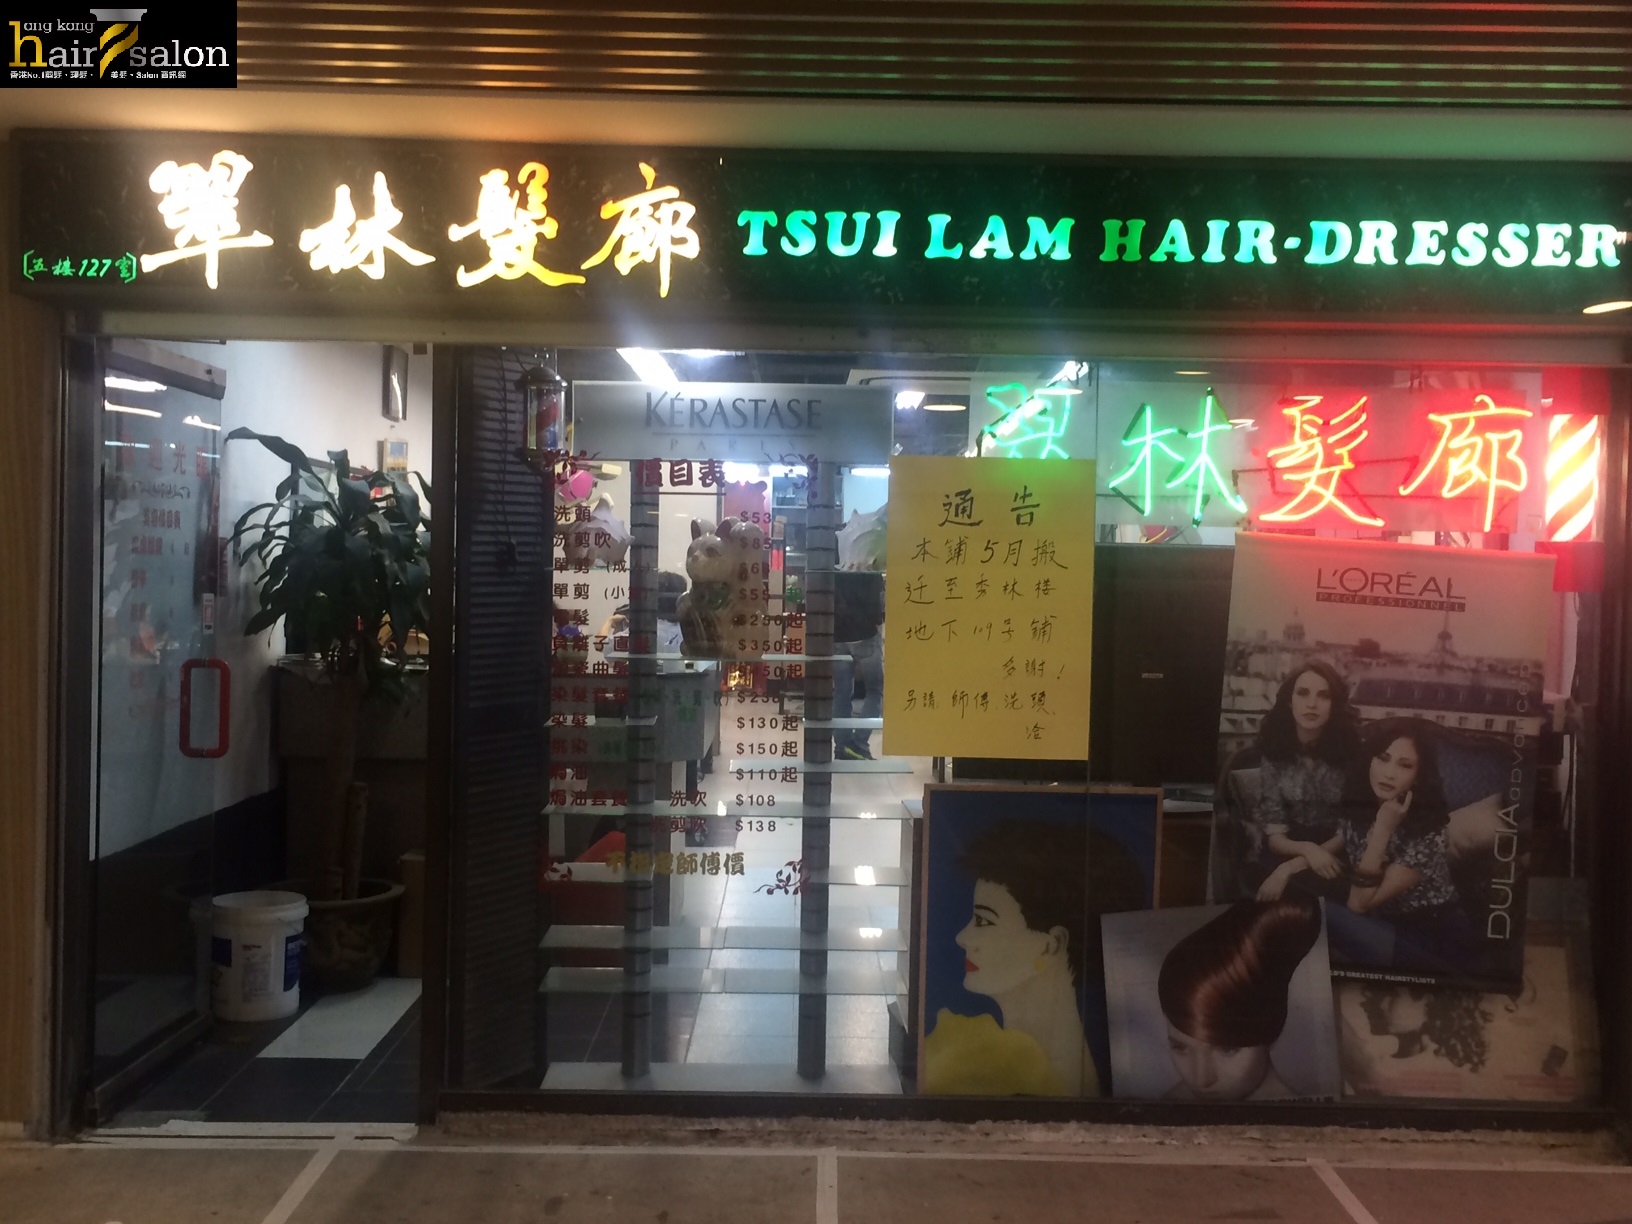 髮型屋: 翠林髮廊 Tsui Lam Hair Salon